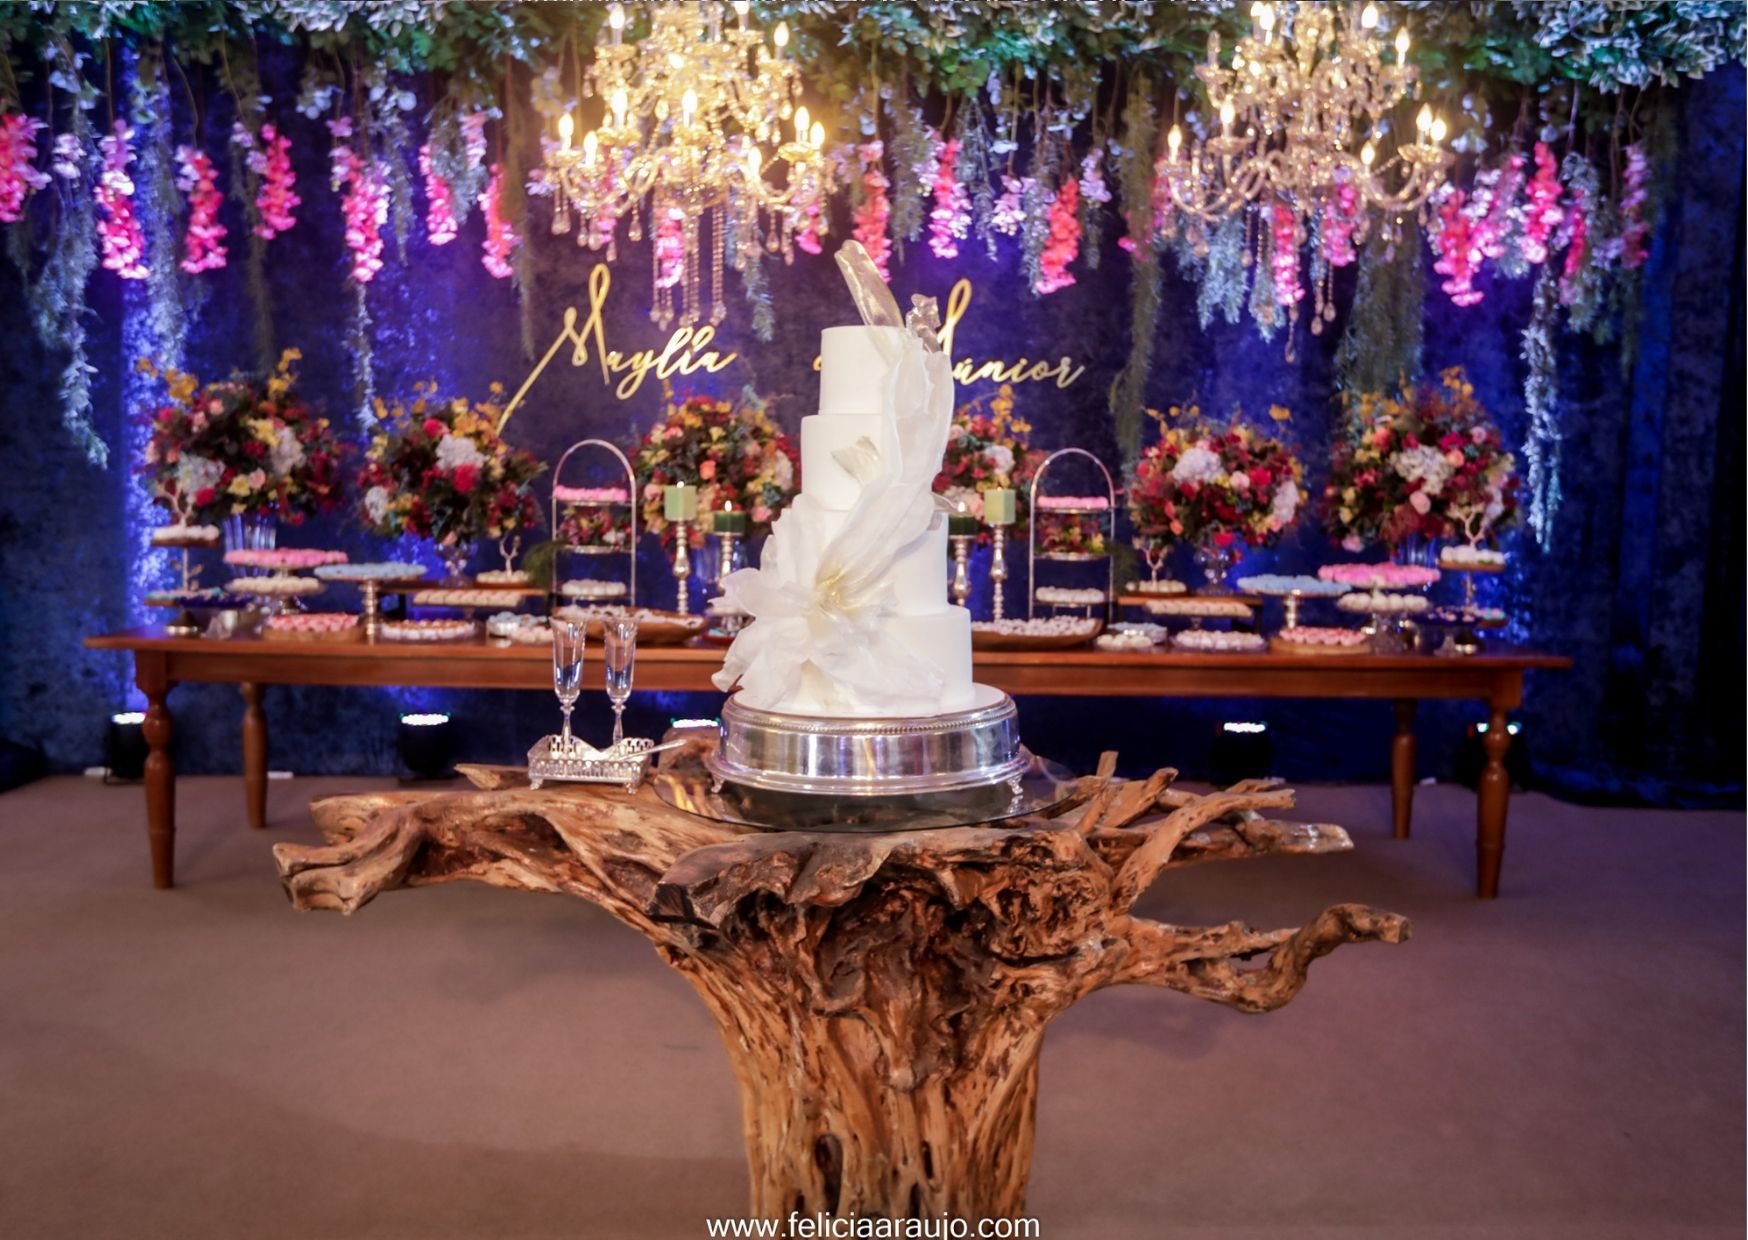 Tronco de árvore e bolo de casamento, mesa com flores